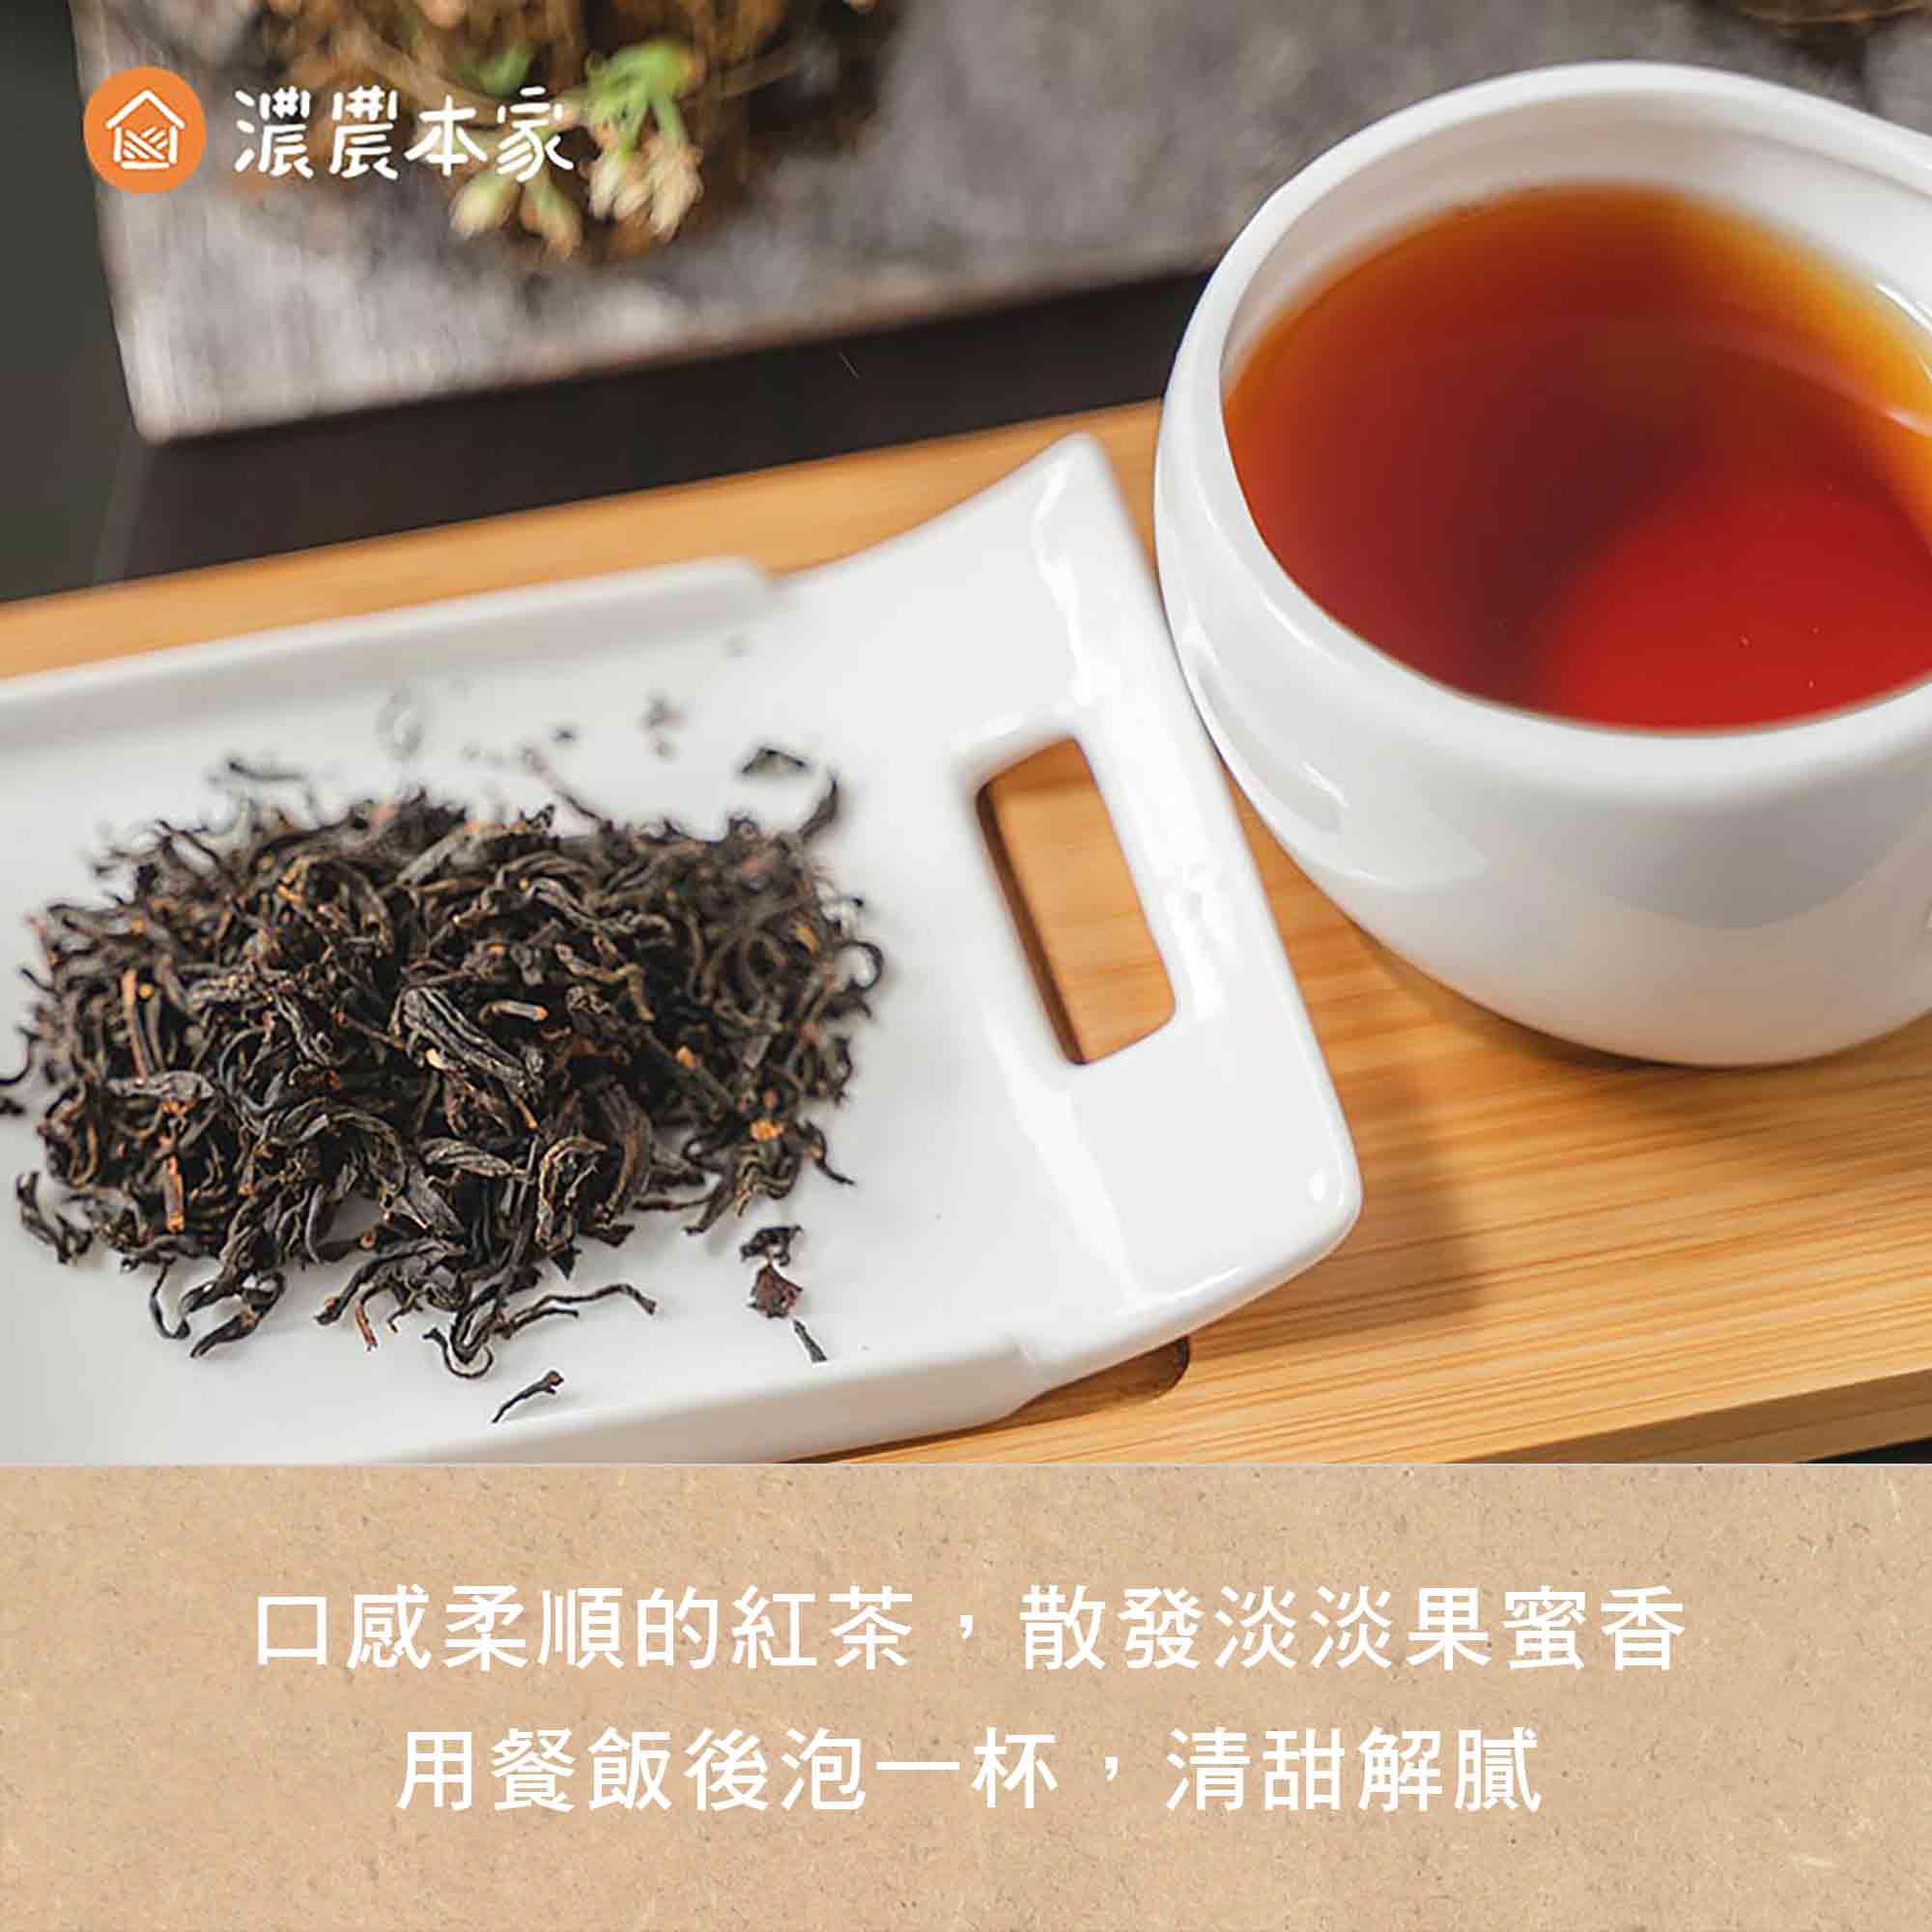 香港人來台灣必買的台灣特色手信推薦人氣蜜香紅茶